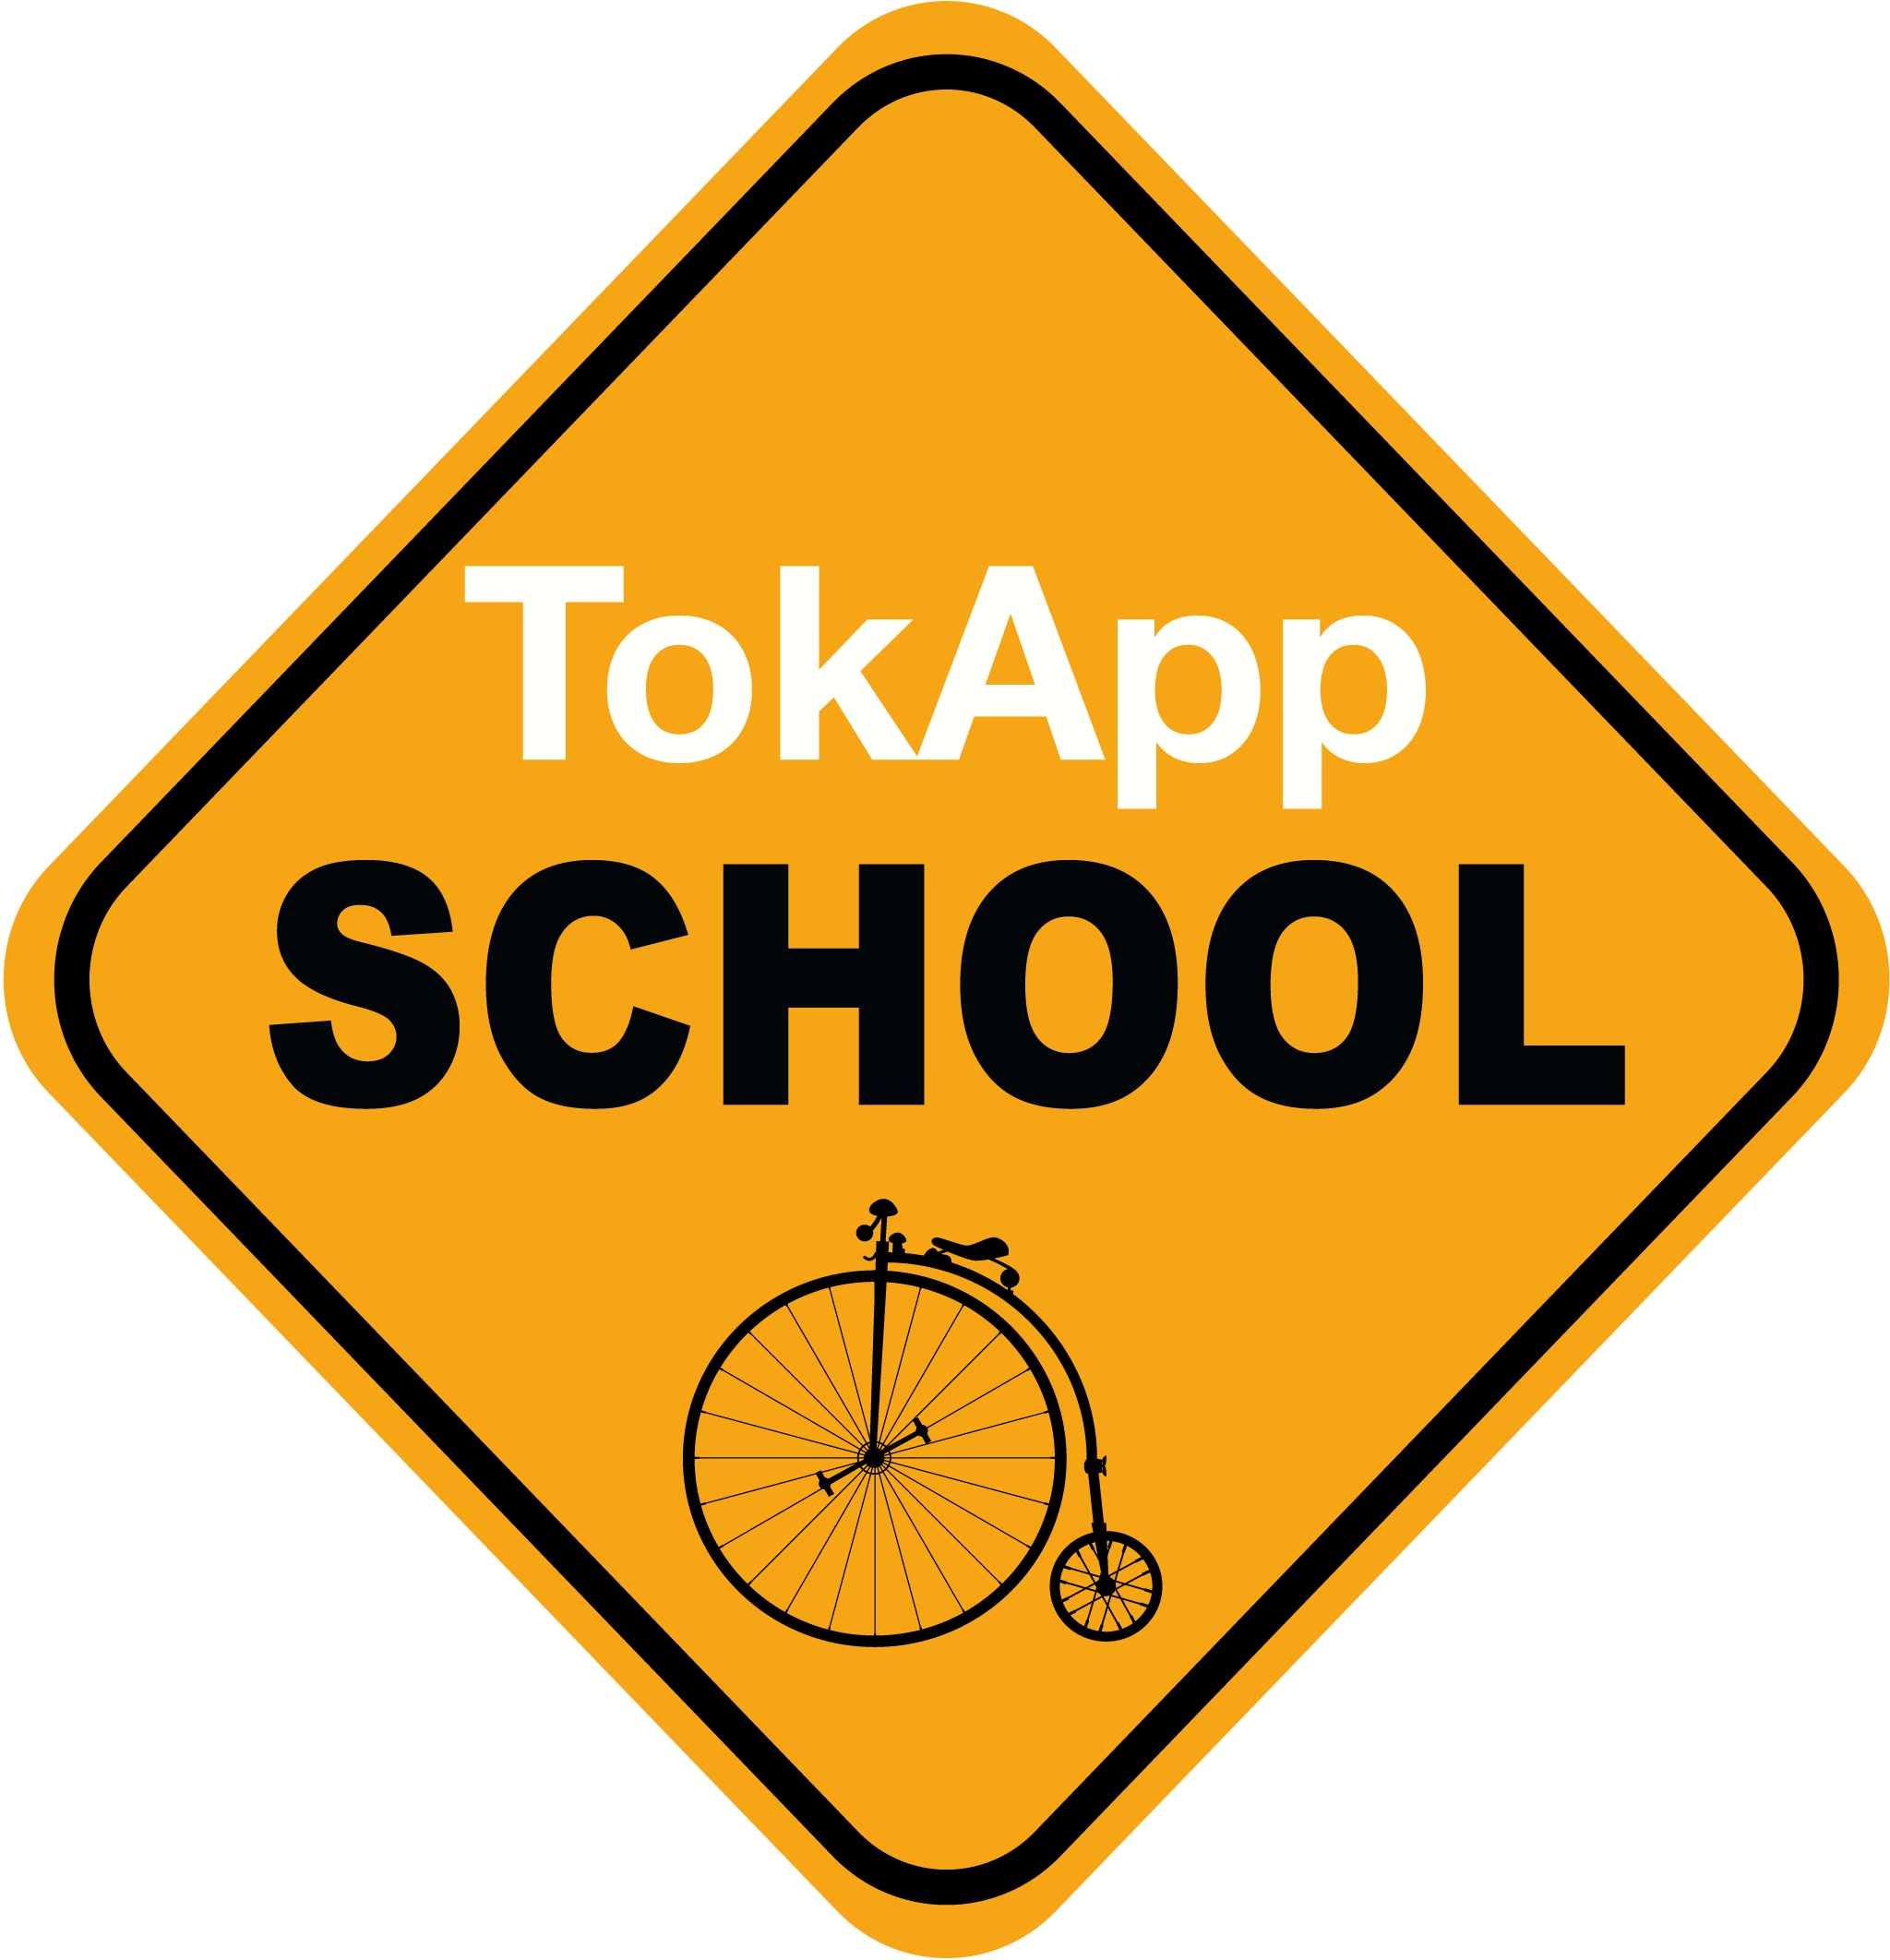 logo tokapp school sec3b1al2048